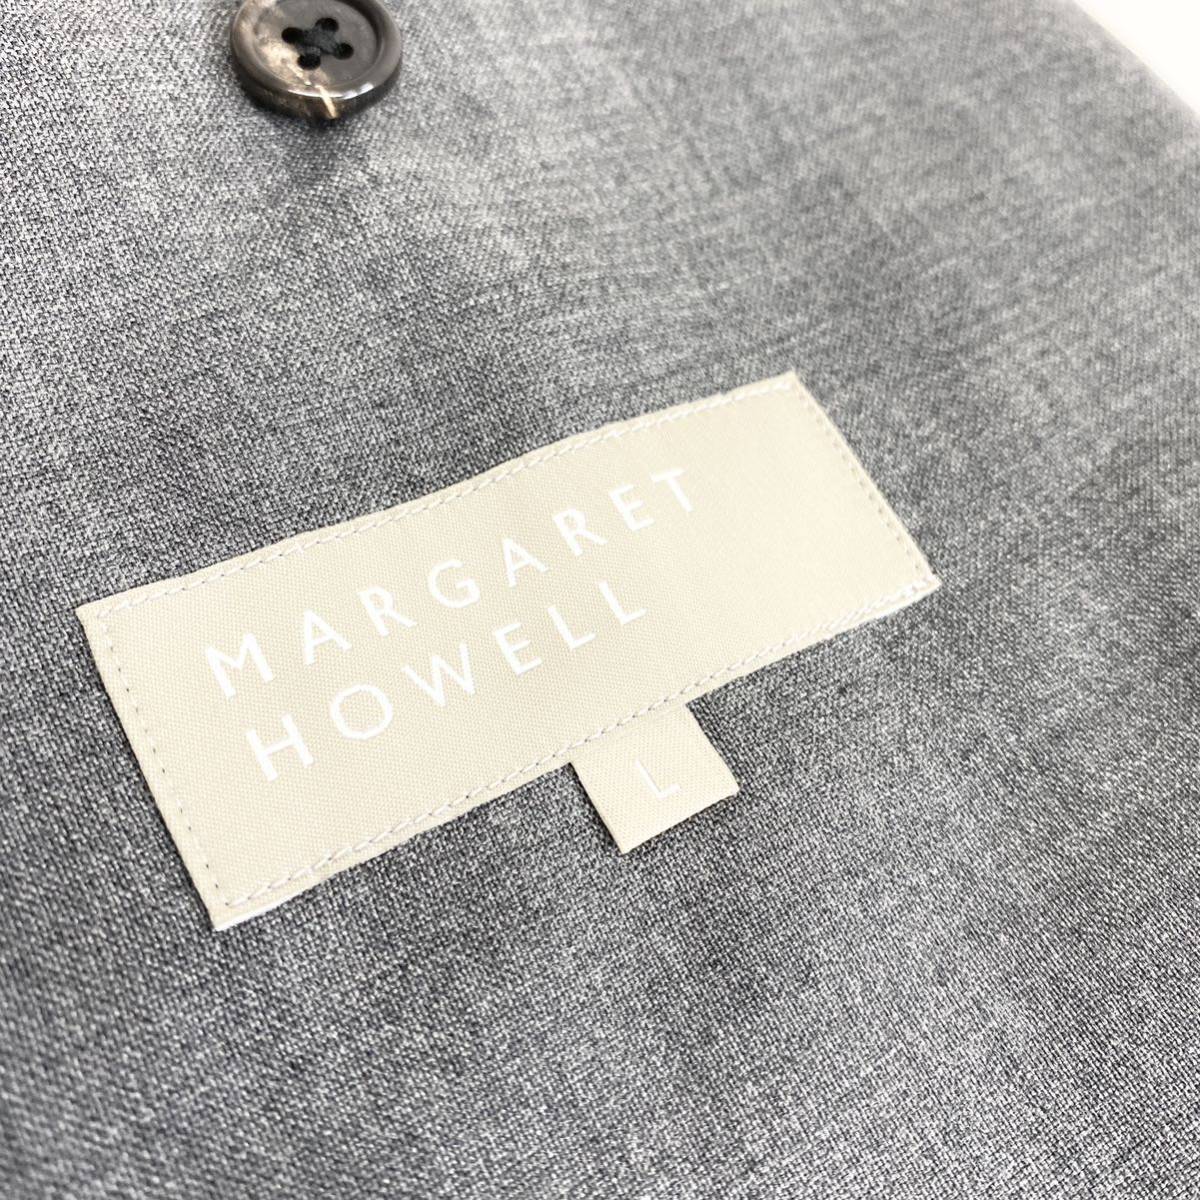 Al13 日本製 MARGARET HOWELL マーガレットハウエル テーラードジャケット サイズL グレー メンズ スーツジャケット ウール 無地 紳士服_画像6